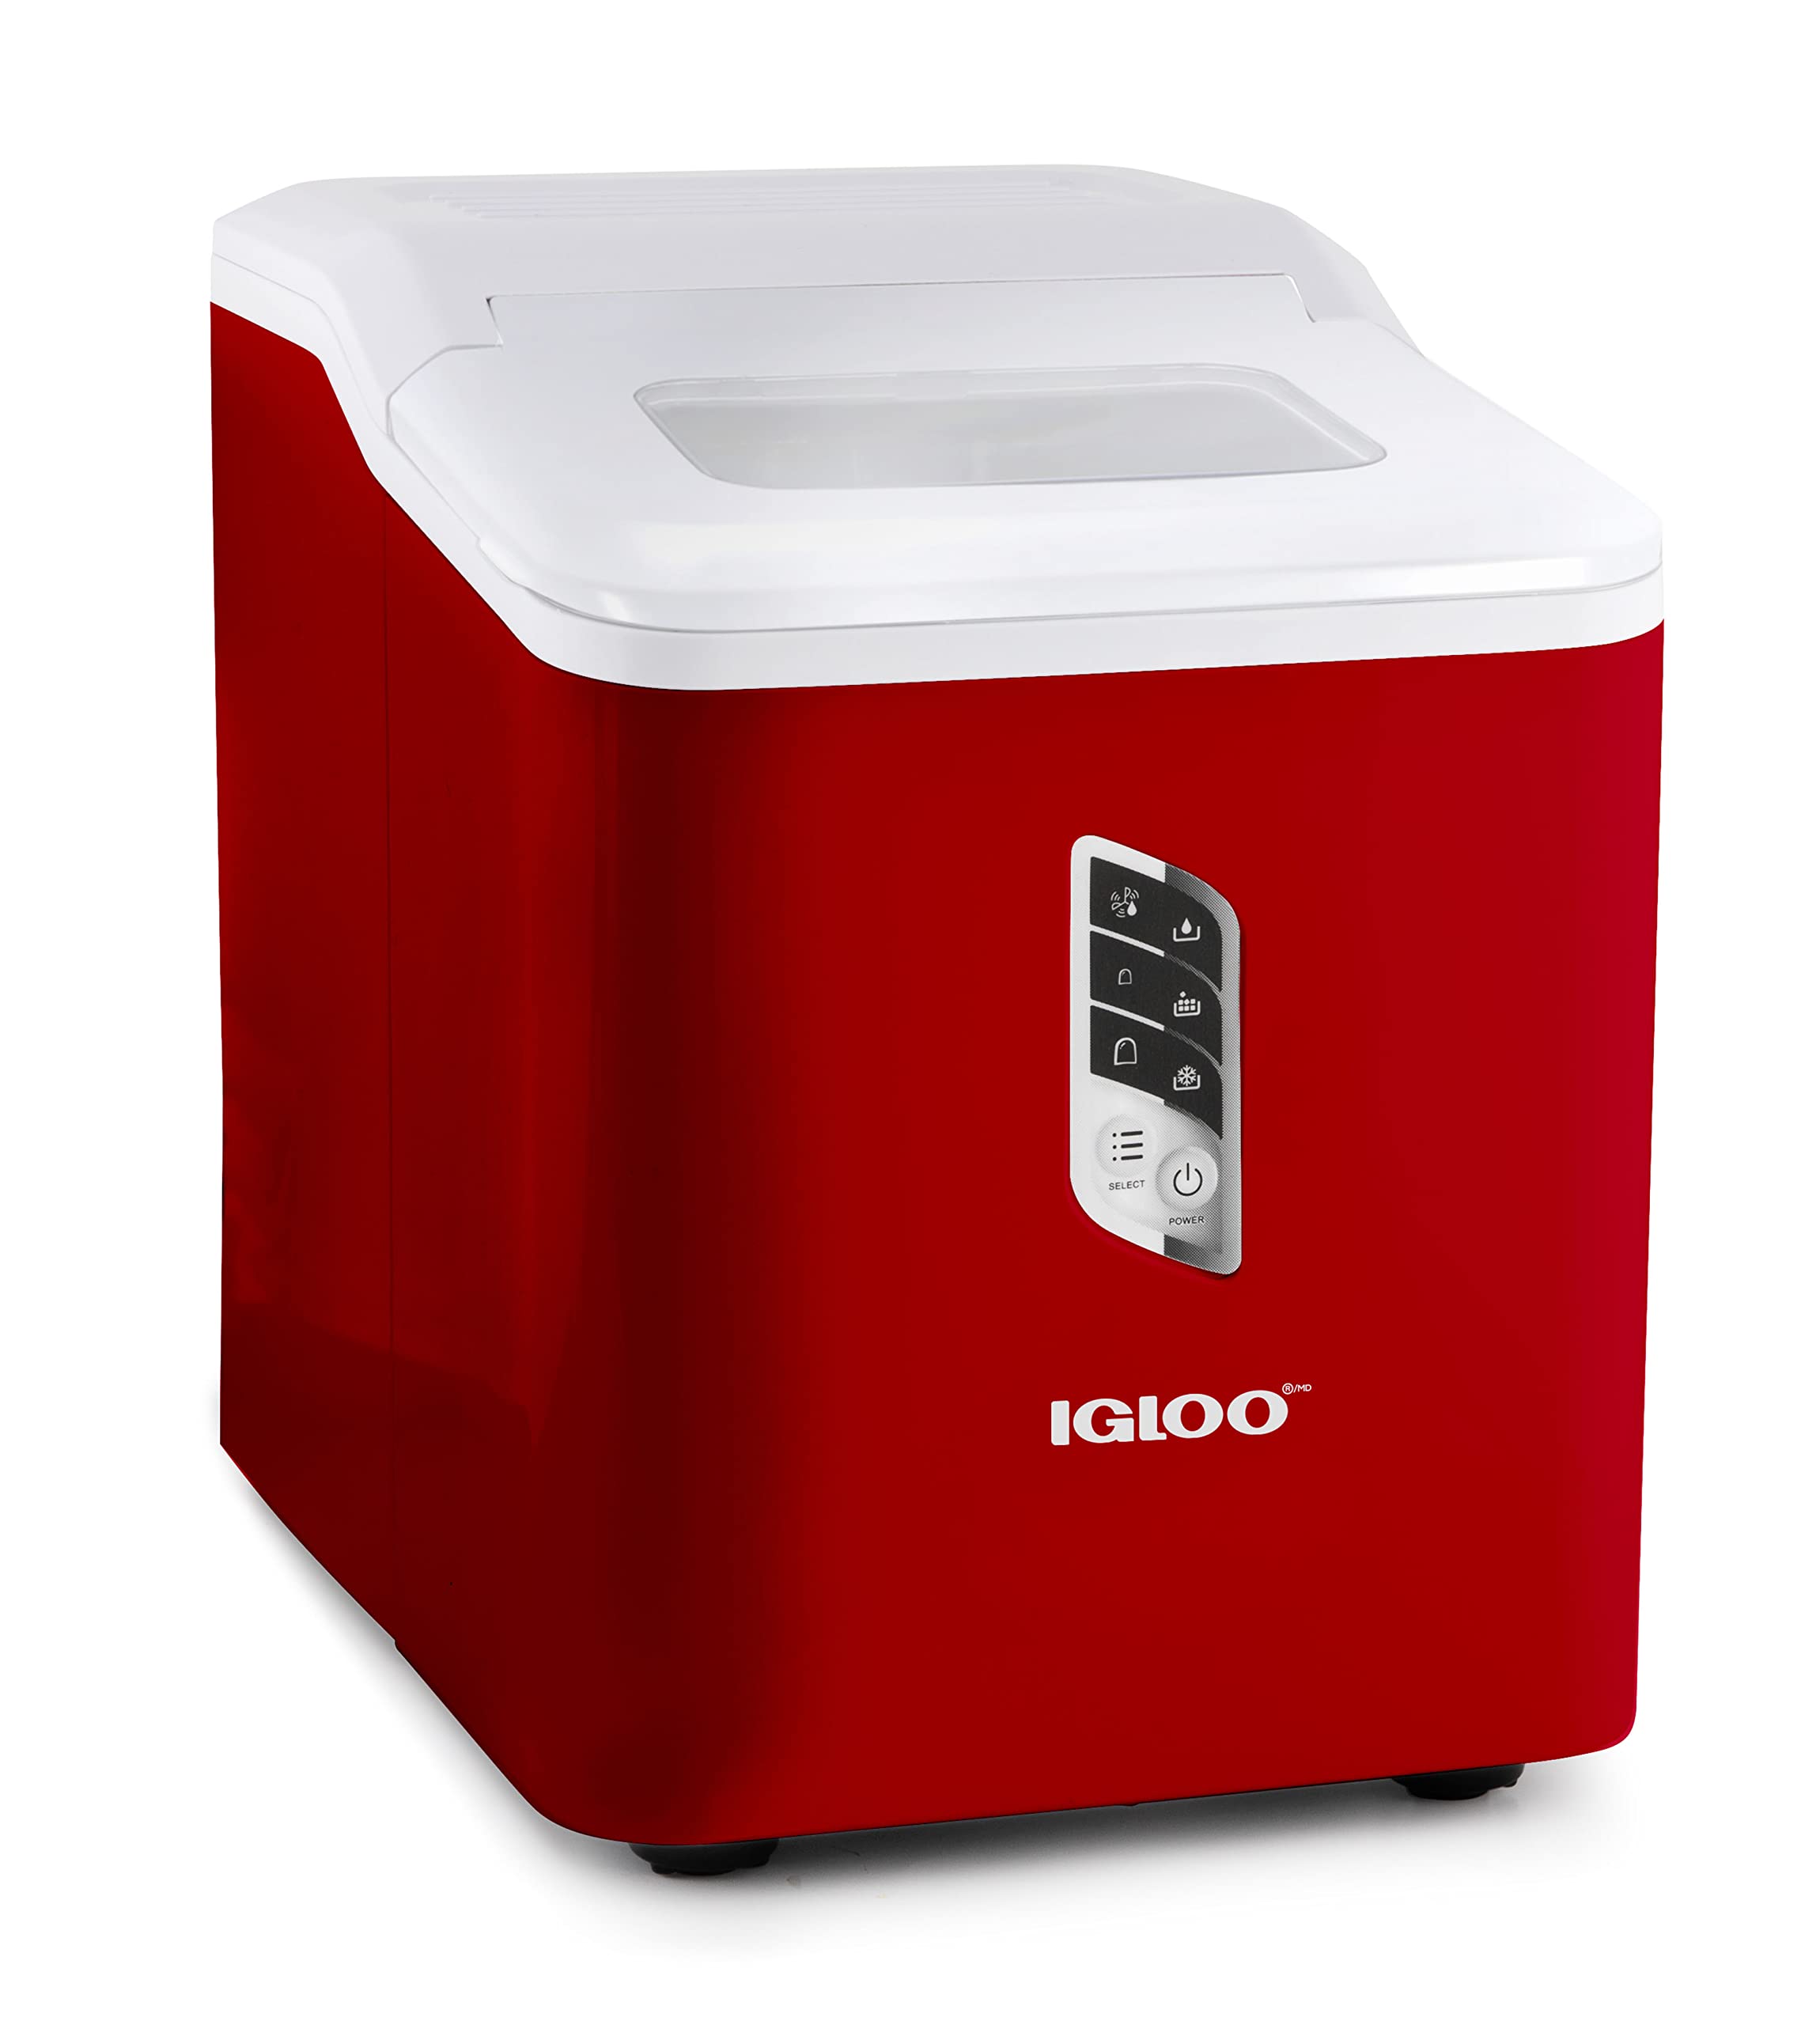 Igloo 自动制冰机，自清洁，台面尺寸，24 小时内制冰 26 磅，7 分钟内制冰 9 块大小冰块，LED 控制面板，含勺子，非常适合水瓶、混合饮料